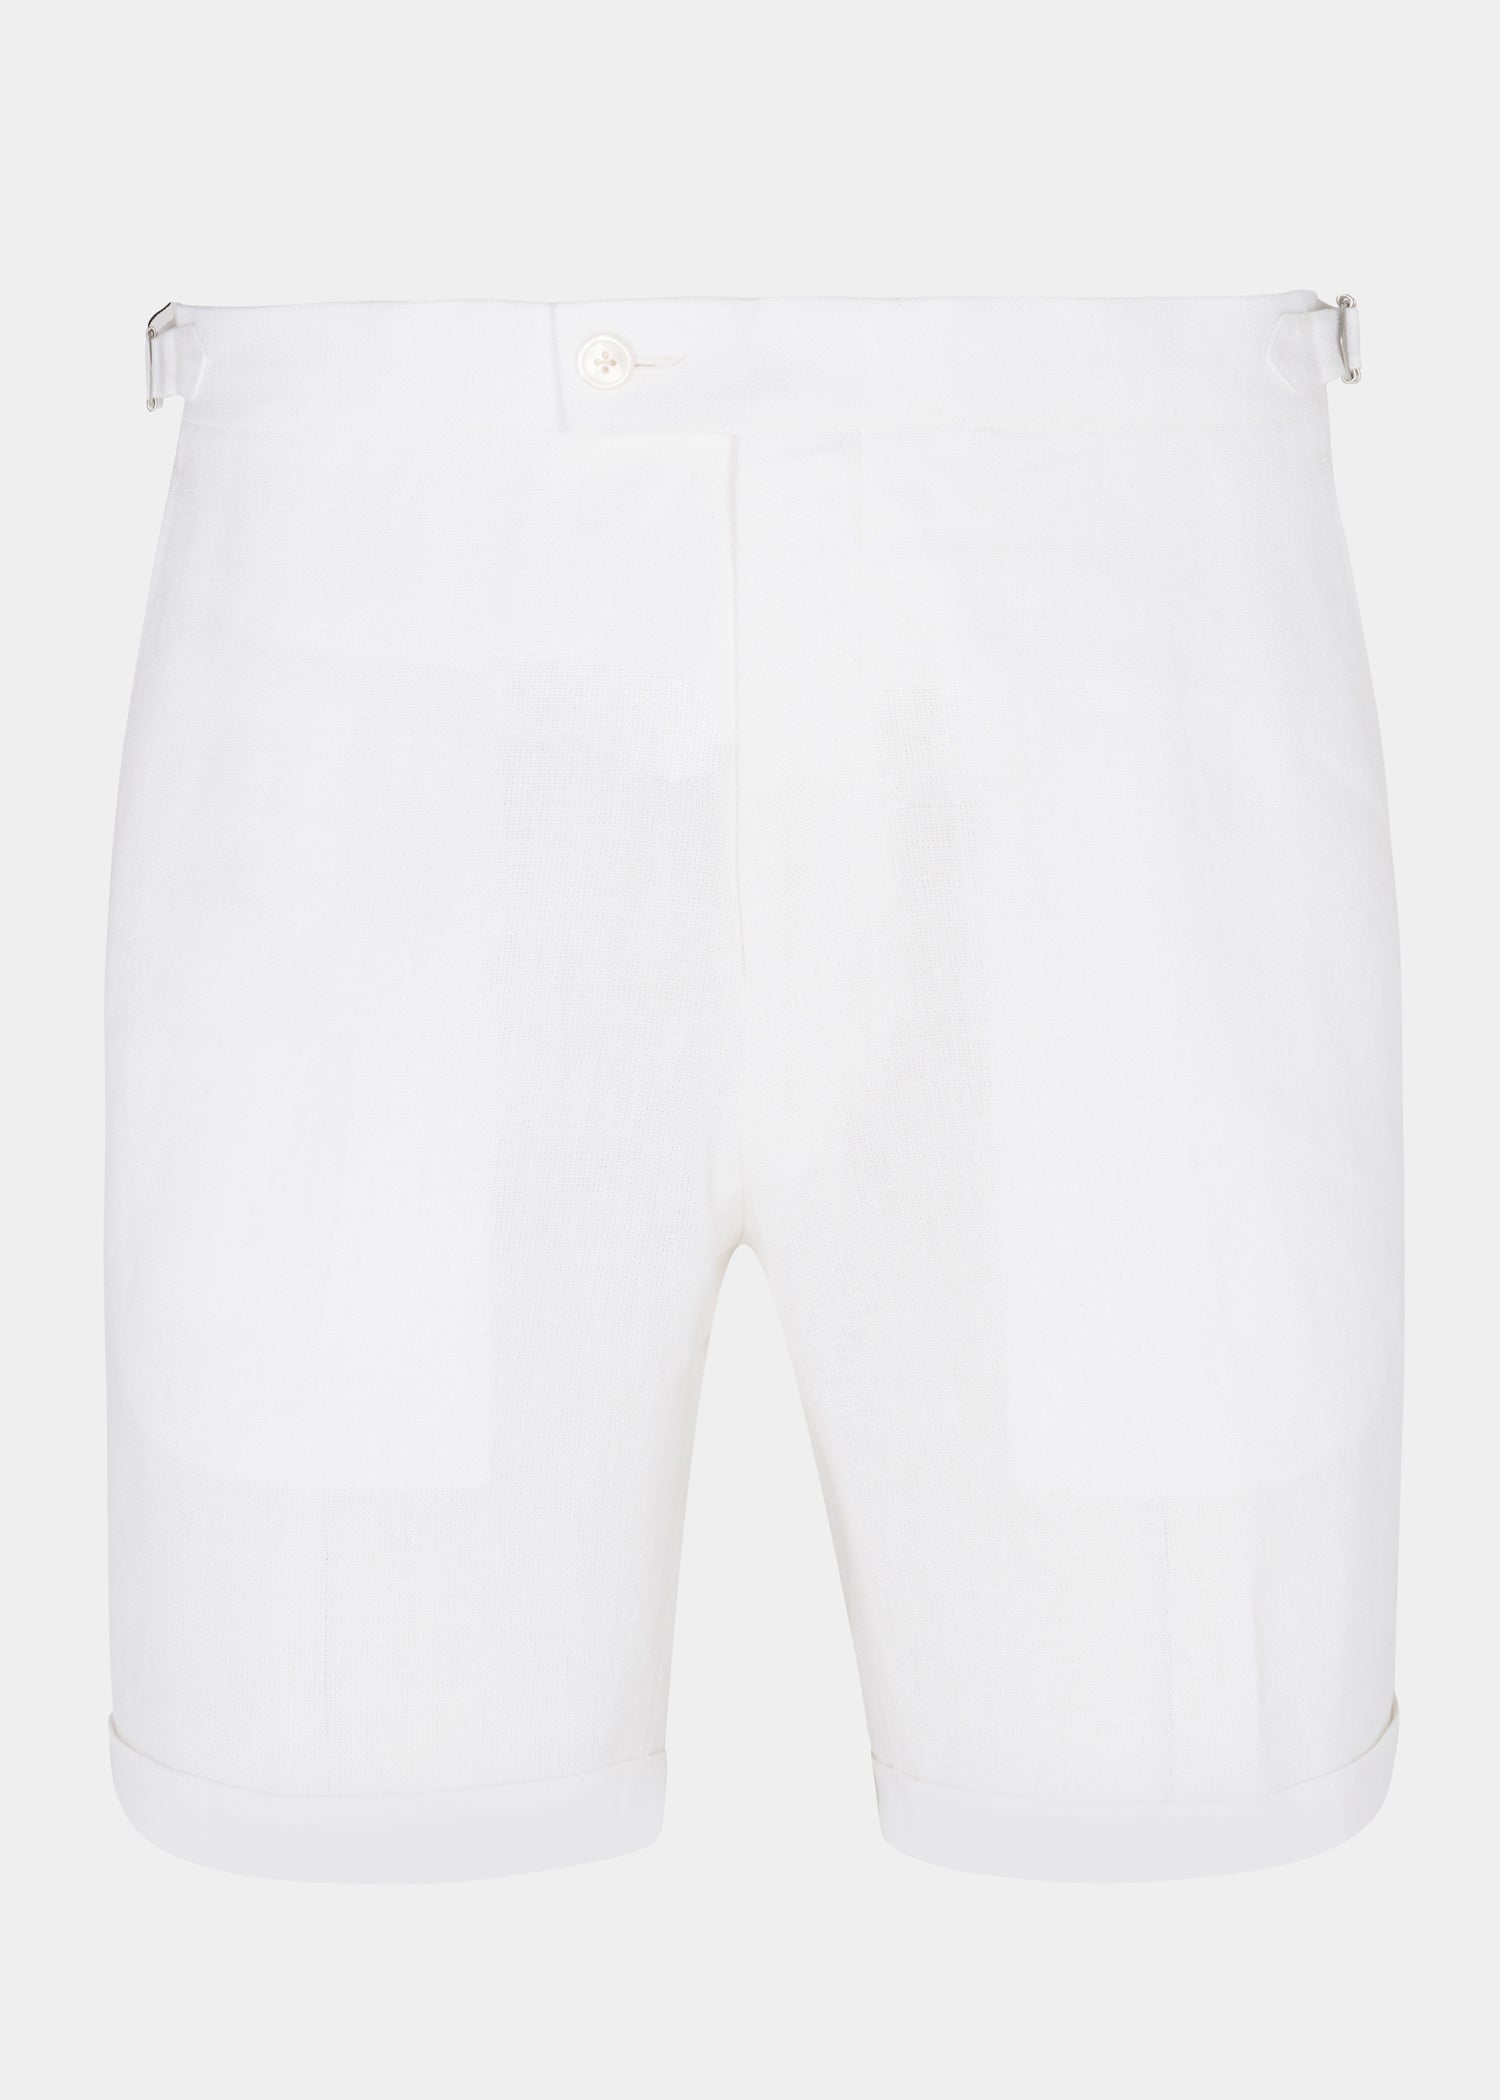 White Linen Shorts - Samir Bachkami